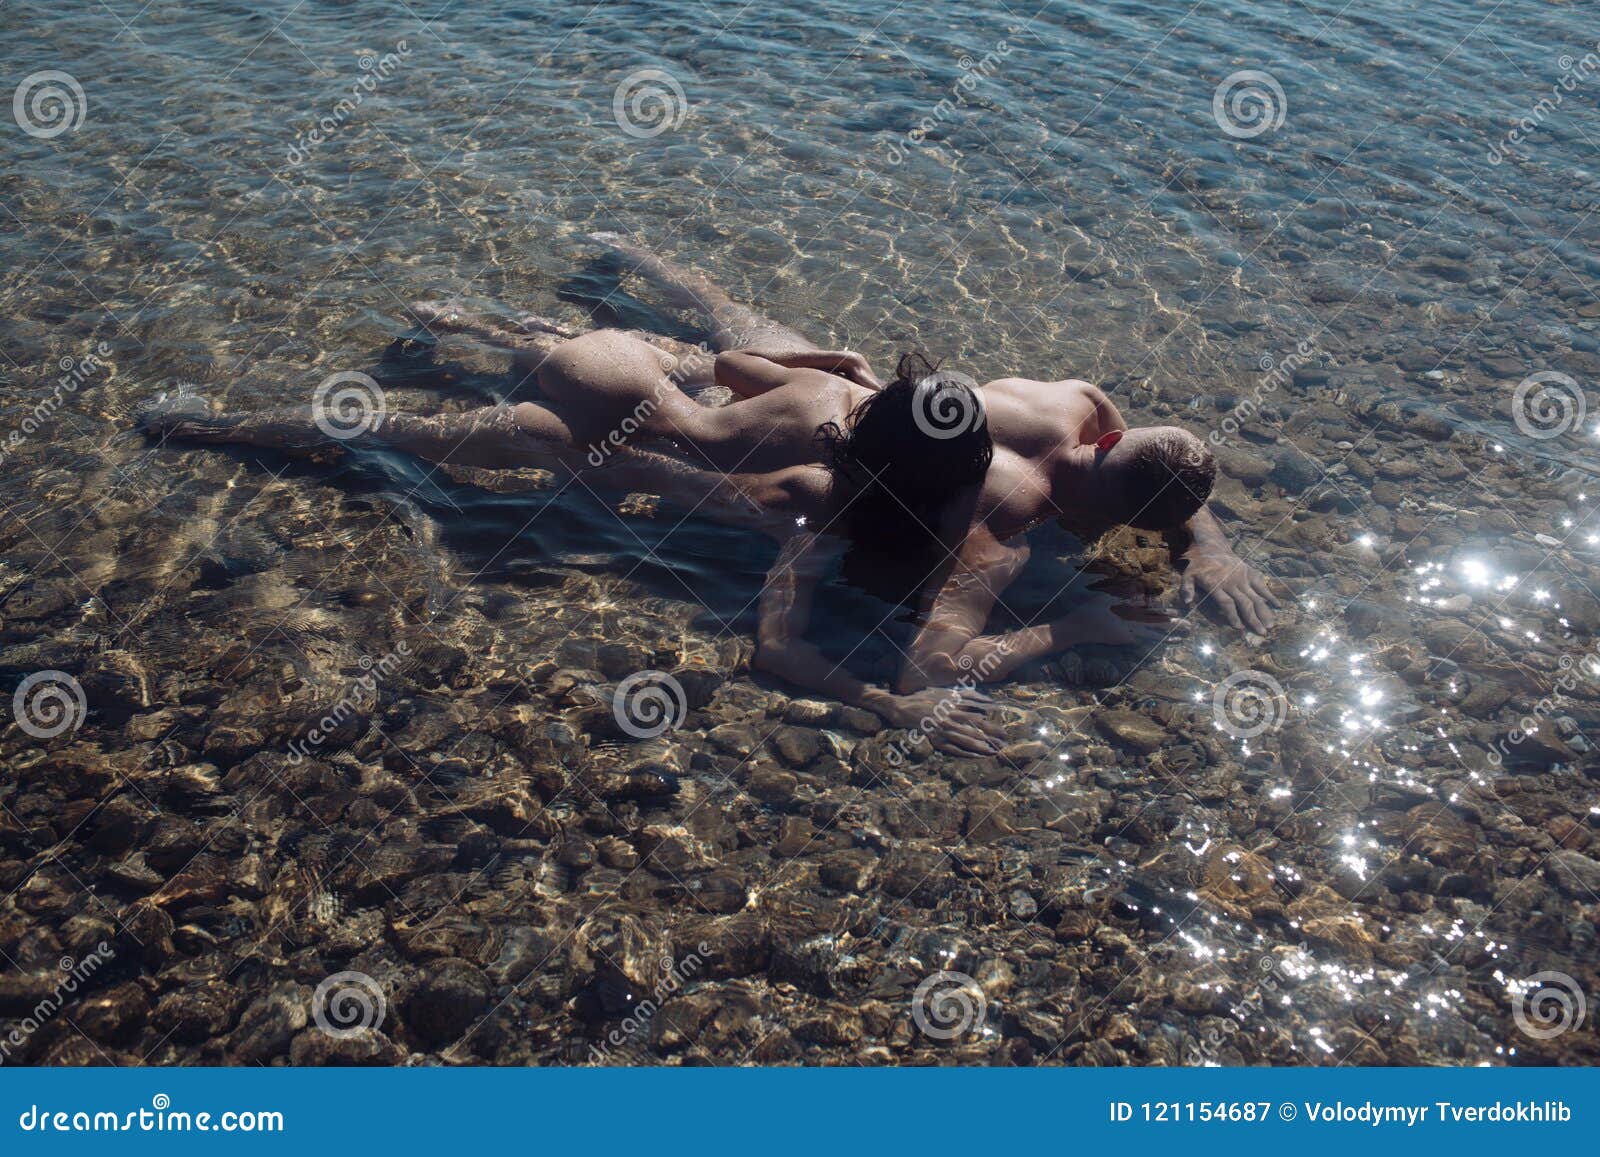 Girls sex beach nude Woman Filmed